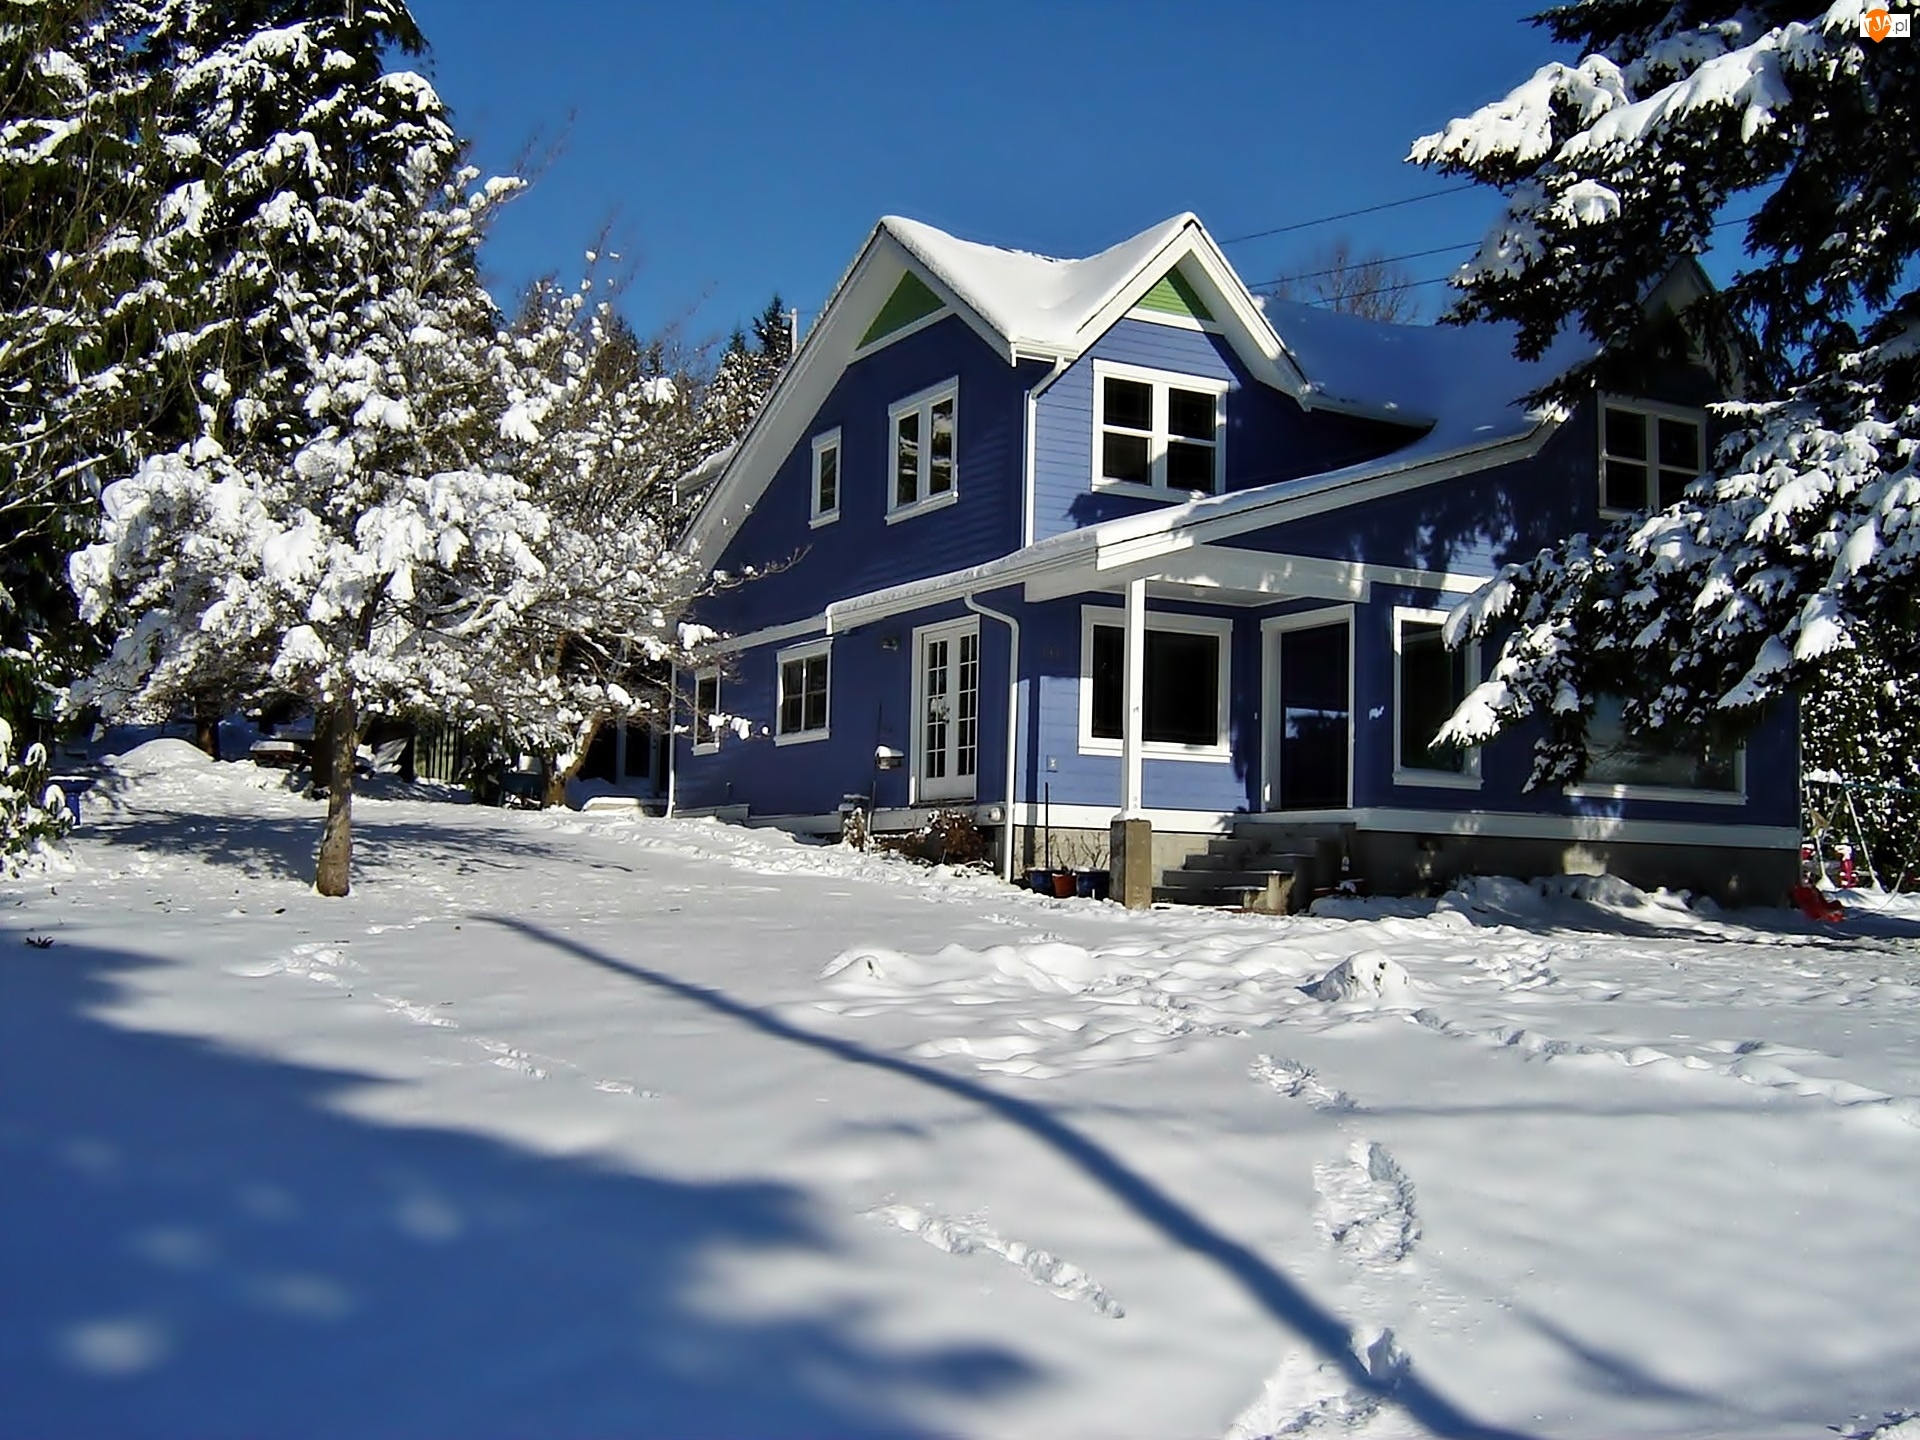 Zima, Śnieg, Drzewa, Dom